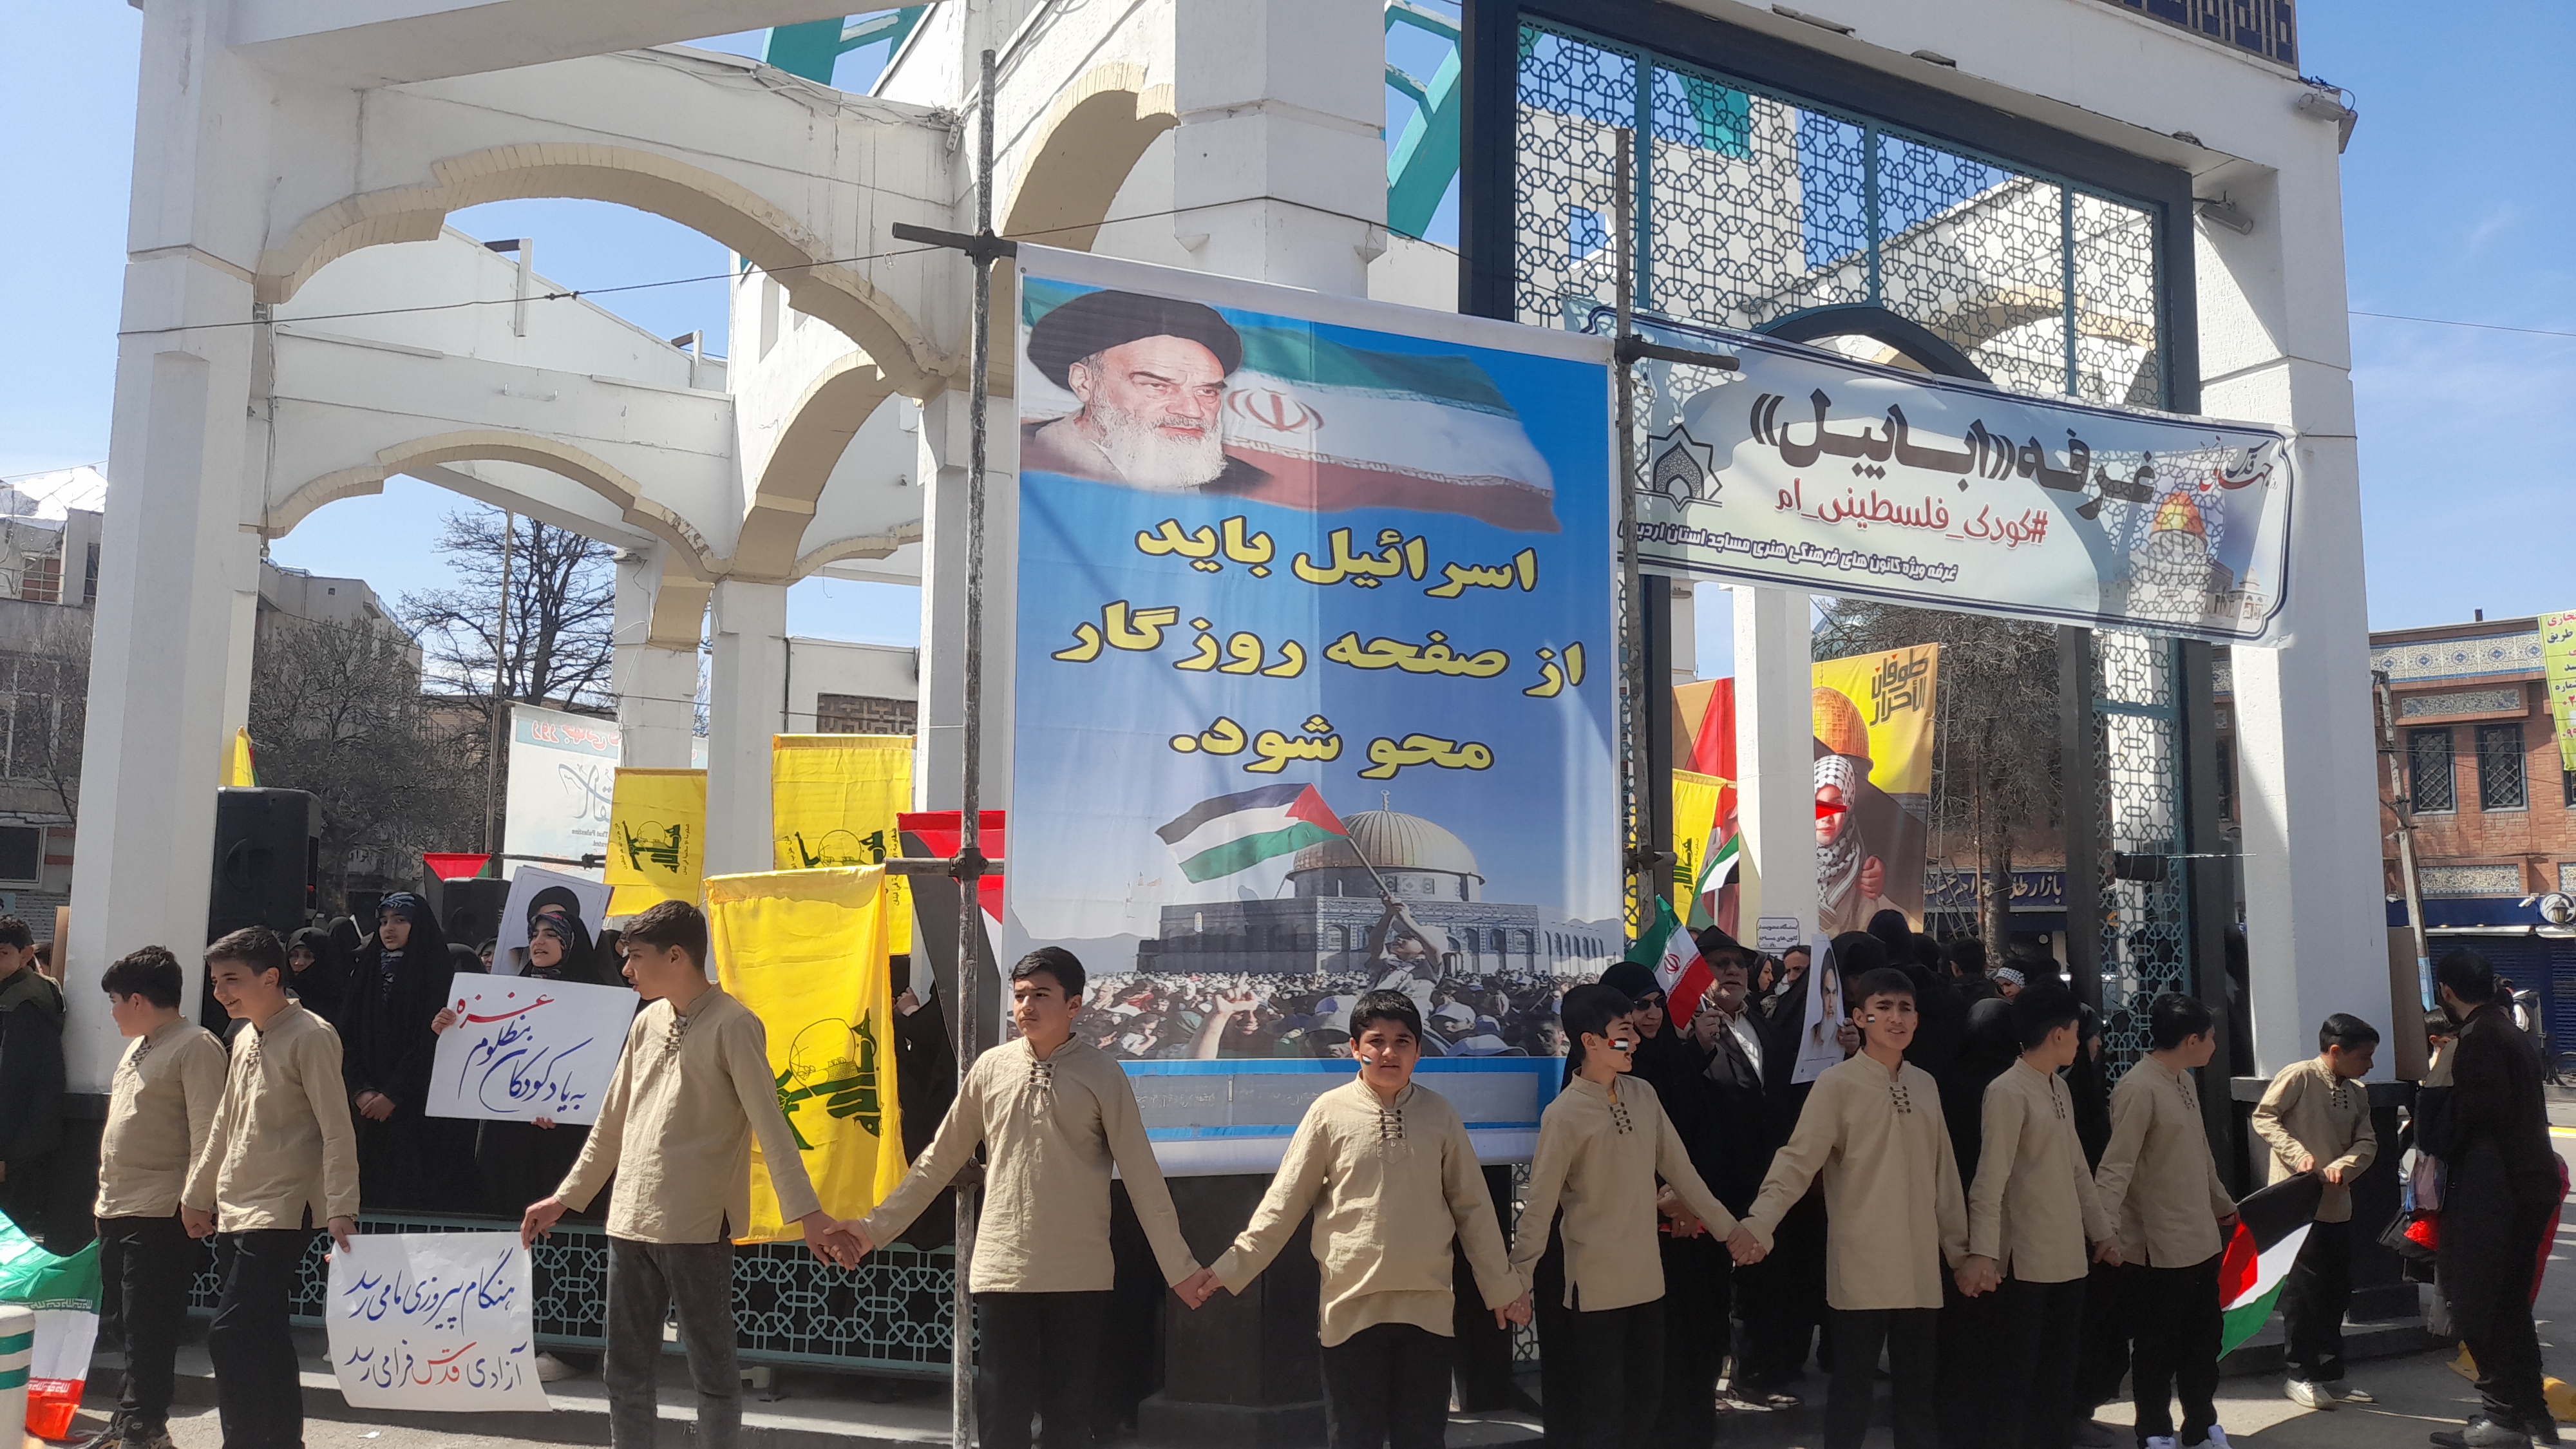 همبستگي بچه‌هاي مسجد با کودکان فلسطيني / غرفه کانون‌هاي مساجد با عنوان «کودک فلسطيني‌ام» برپا شد